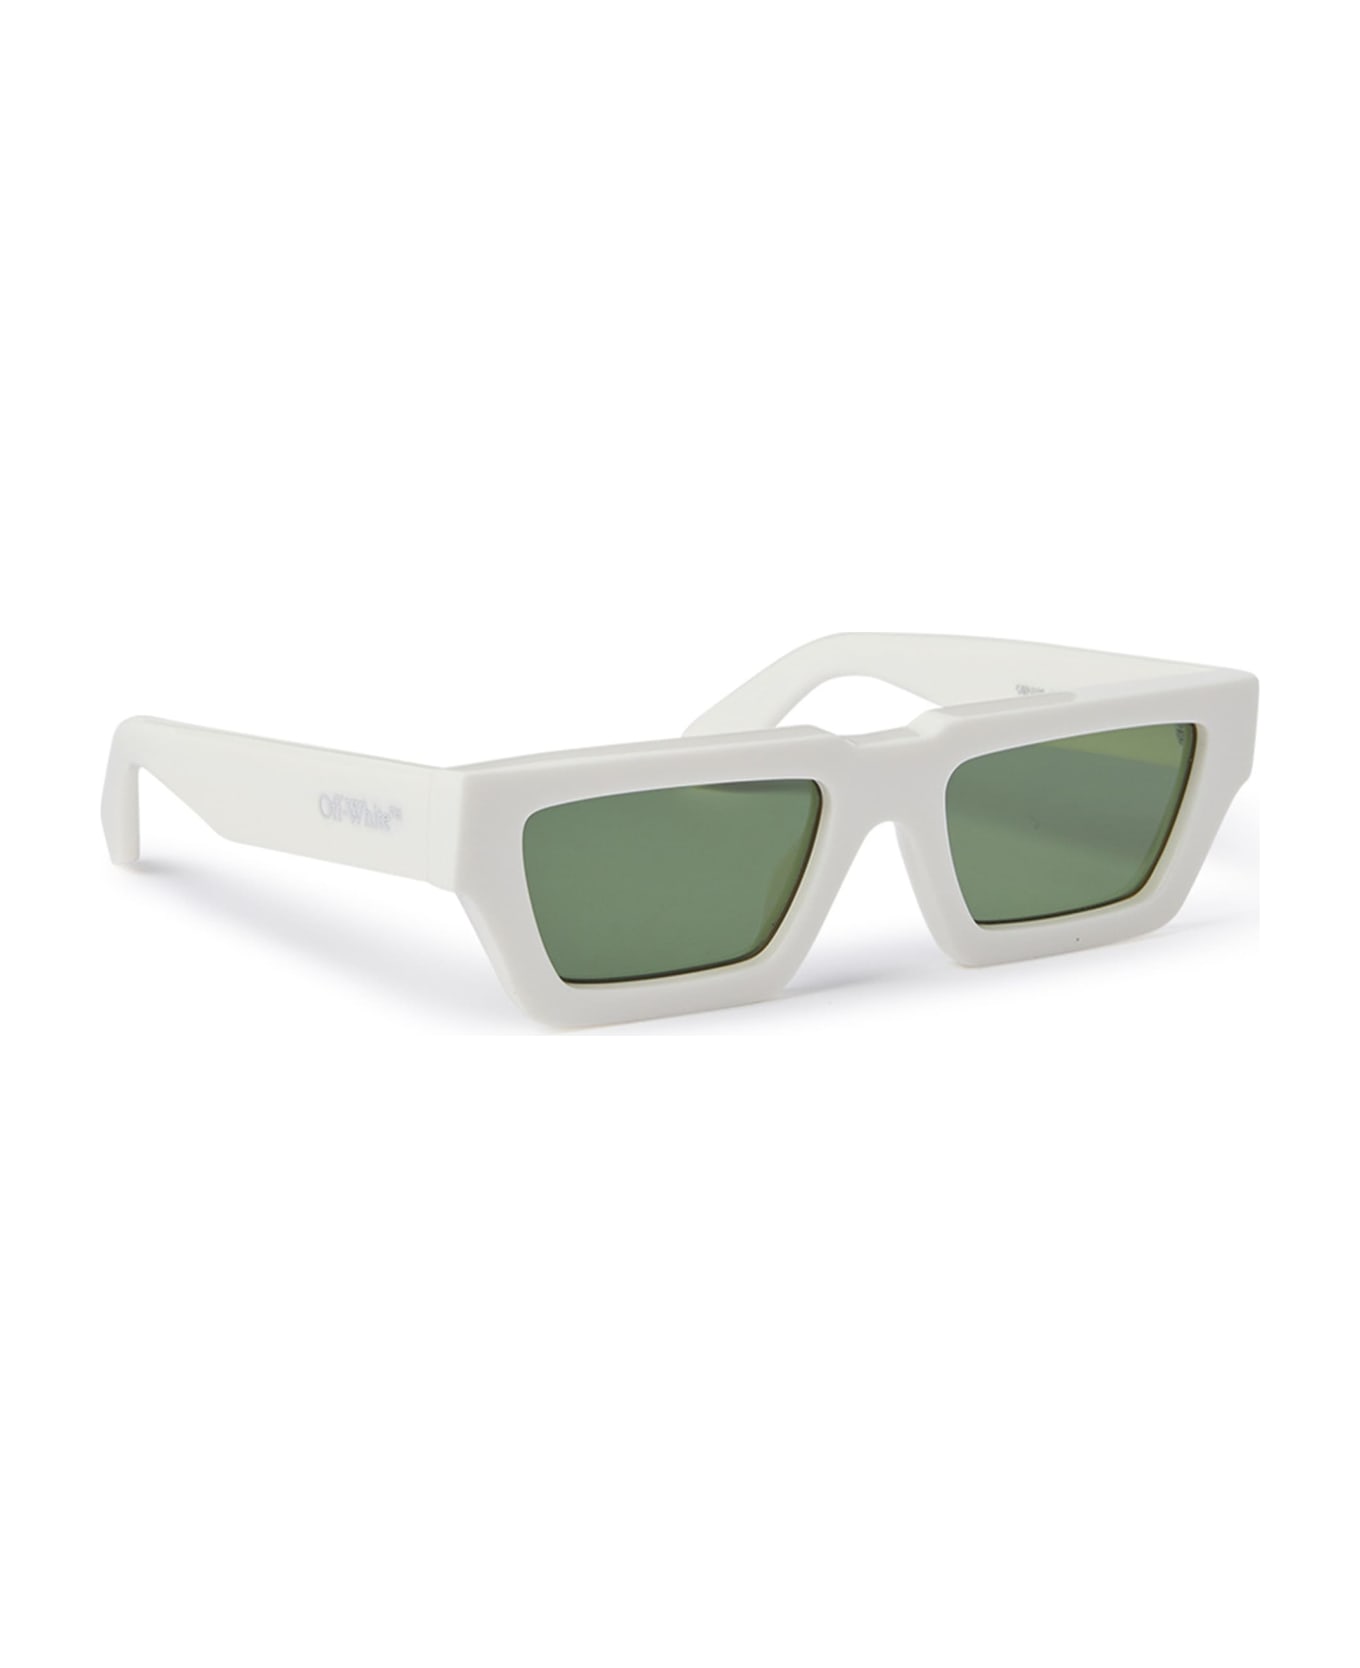 Off-White Manchester - White / Green Sunglasses - White サングラス